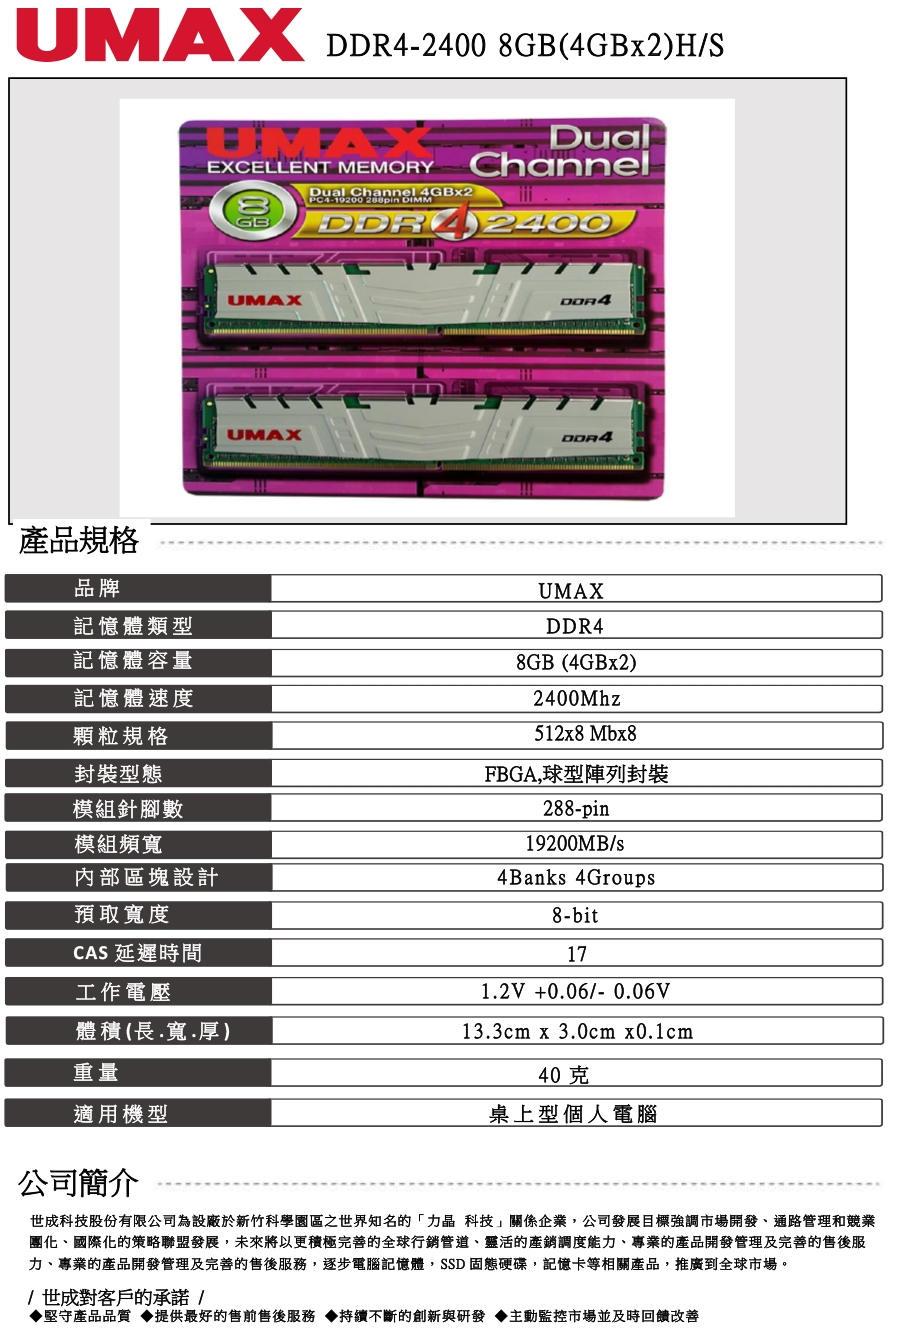 UMAX DDR4 2400 8GB(4Gx2)含散熱片-双通道桌上型記憶體